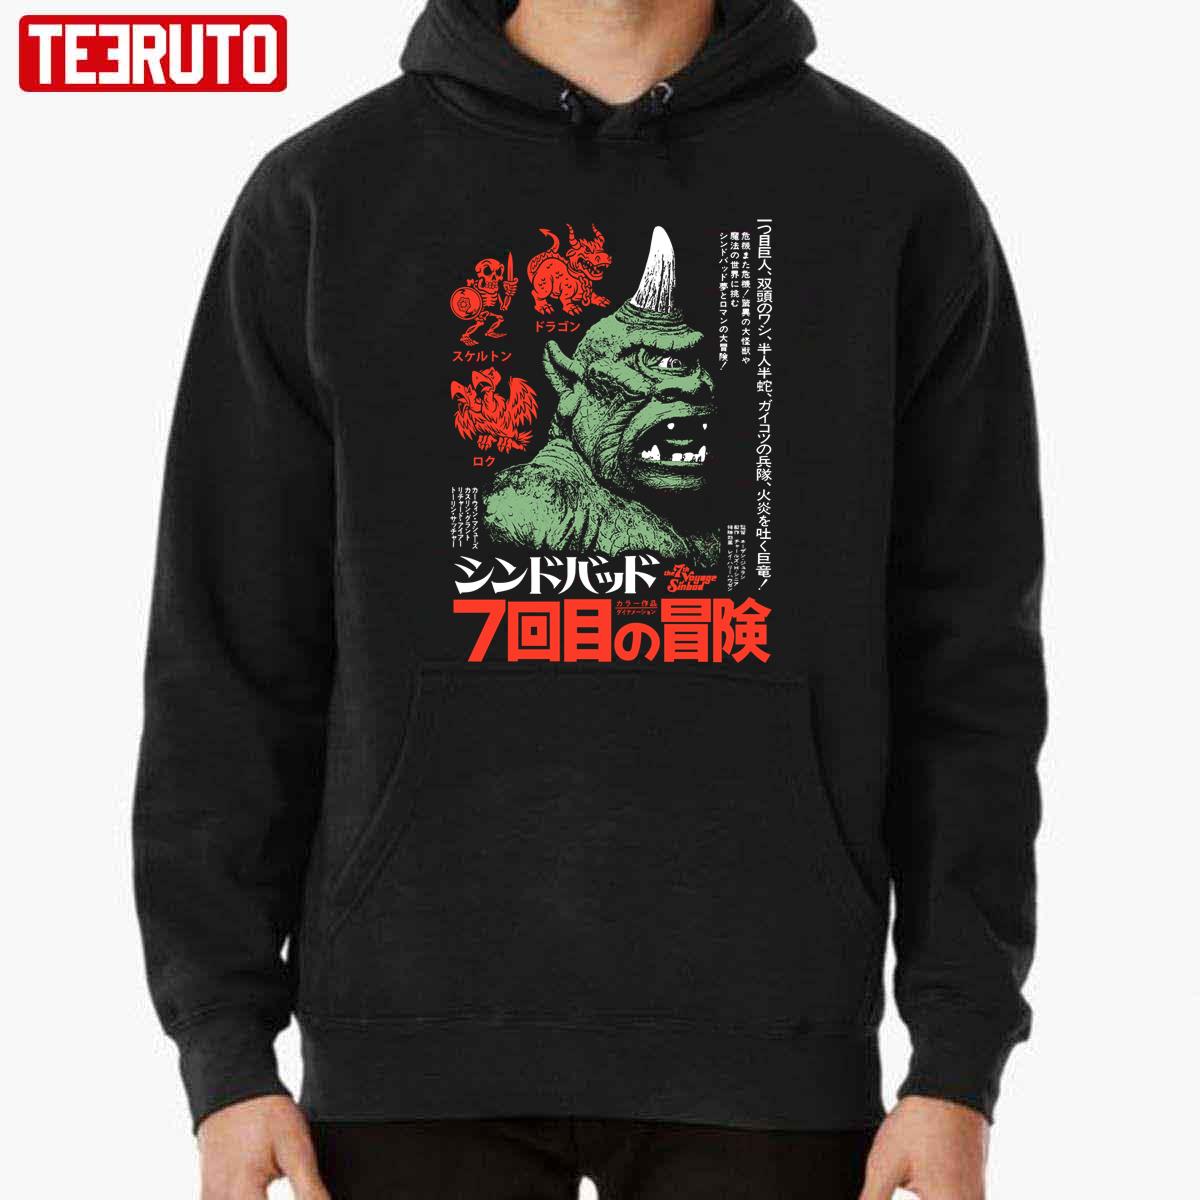 7th Adventure Japanasese Art Unisex Sweatshirt